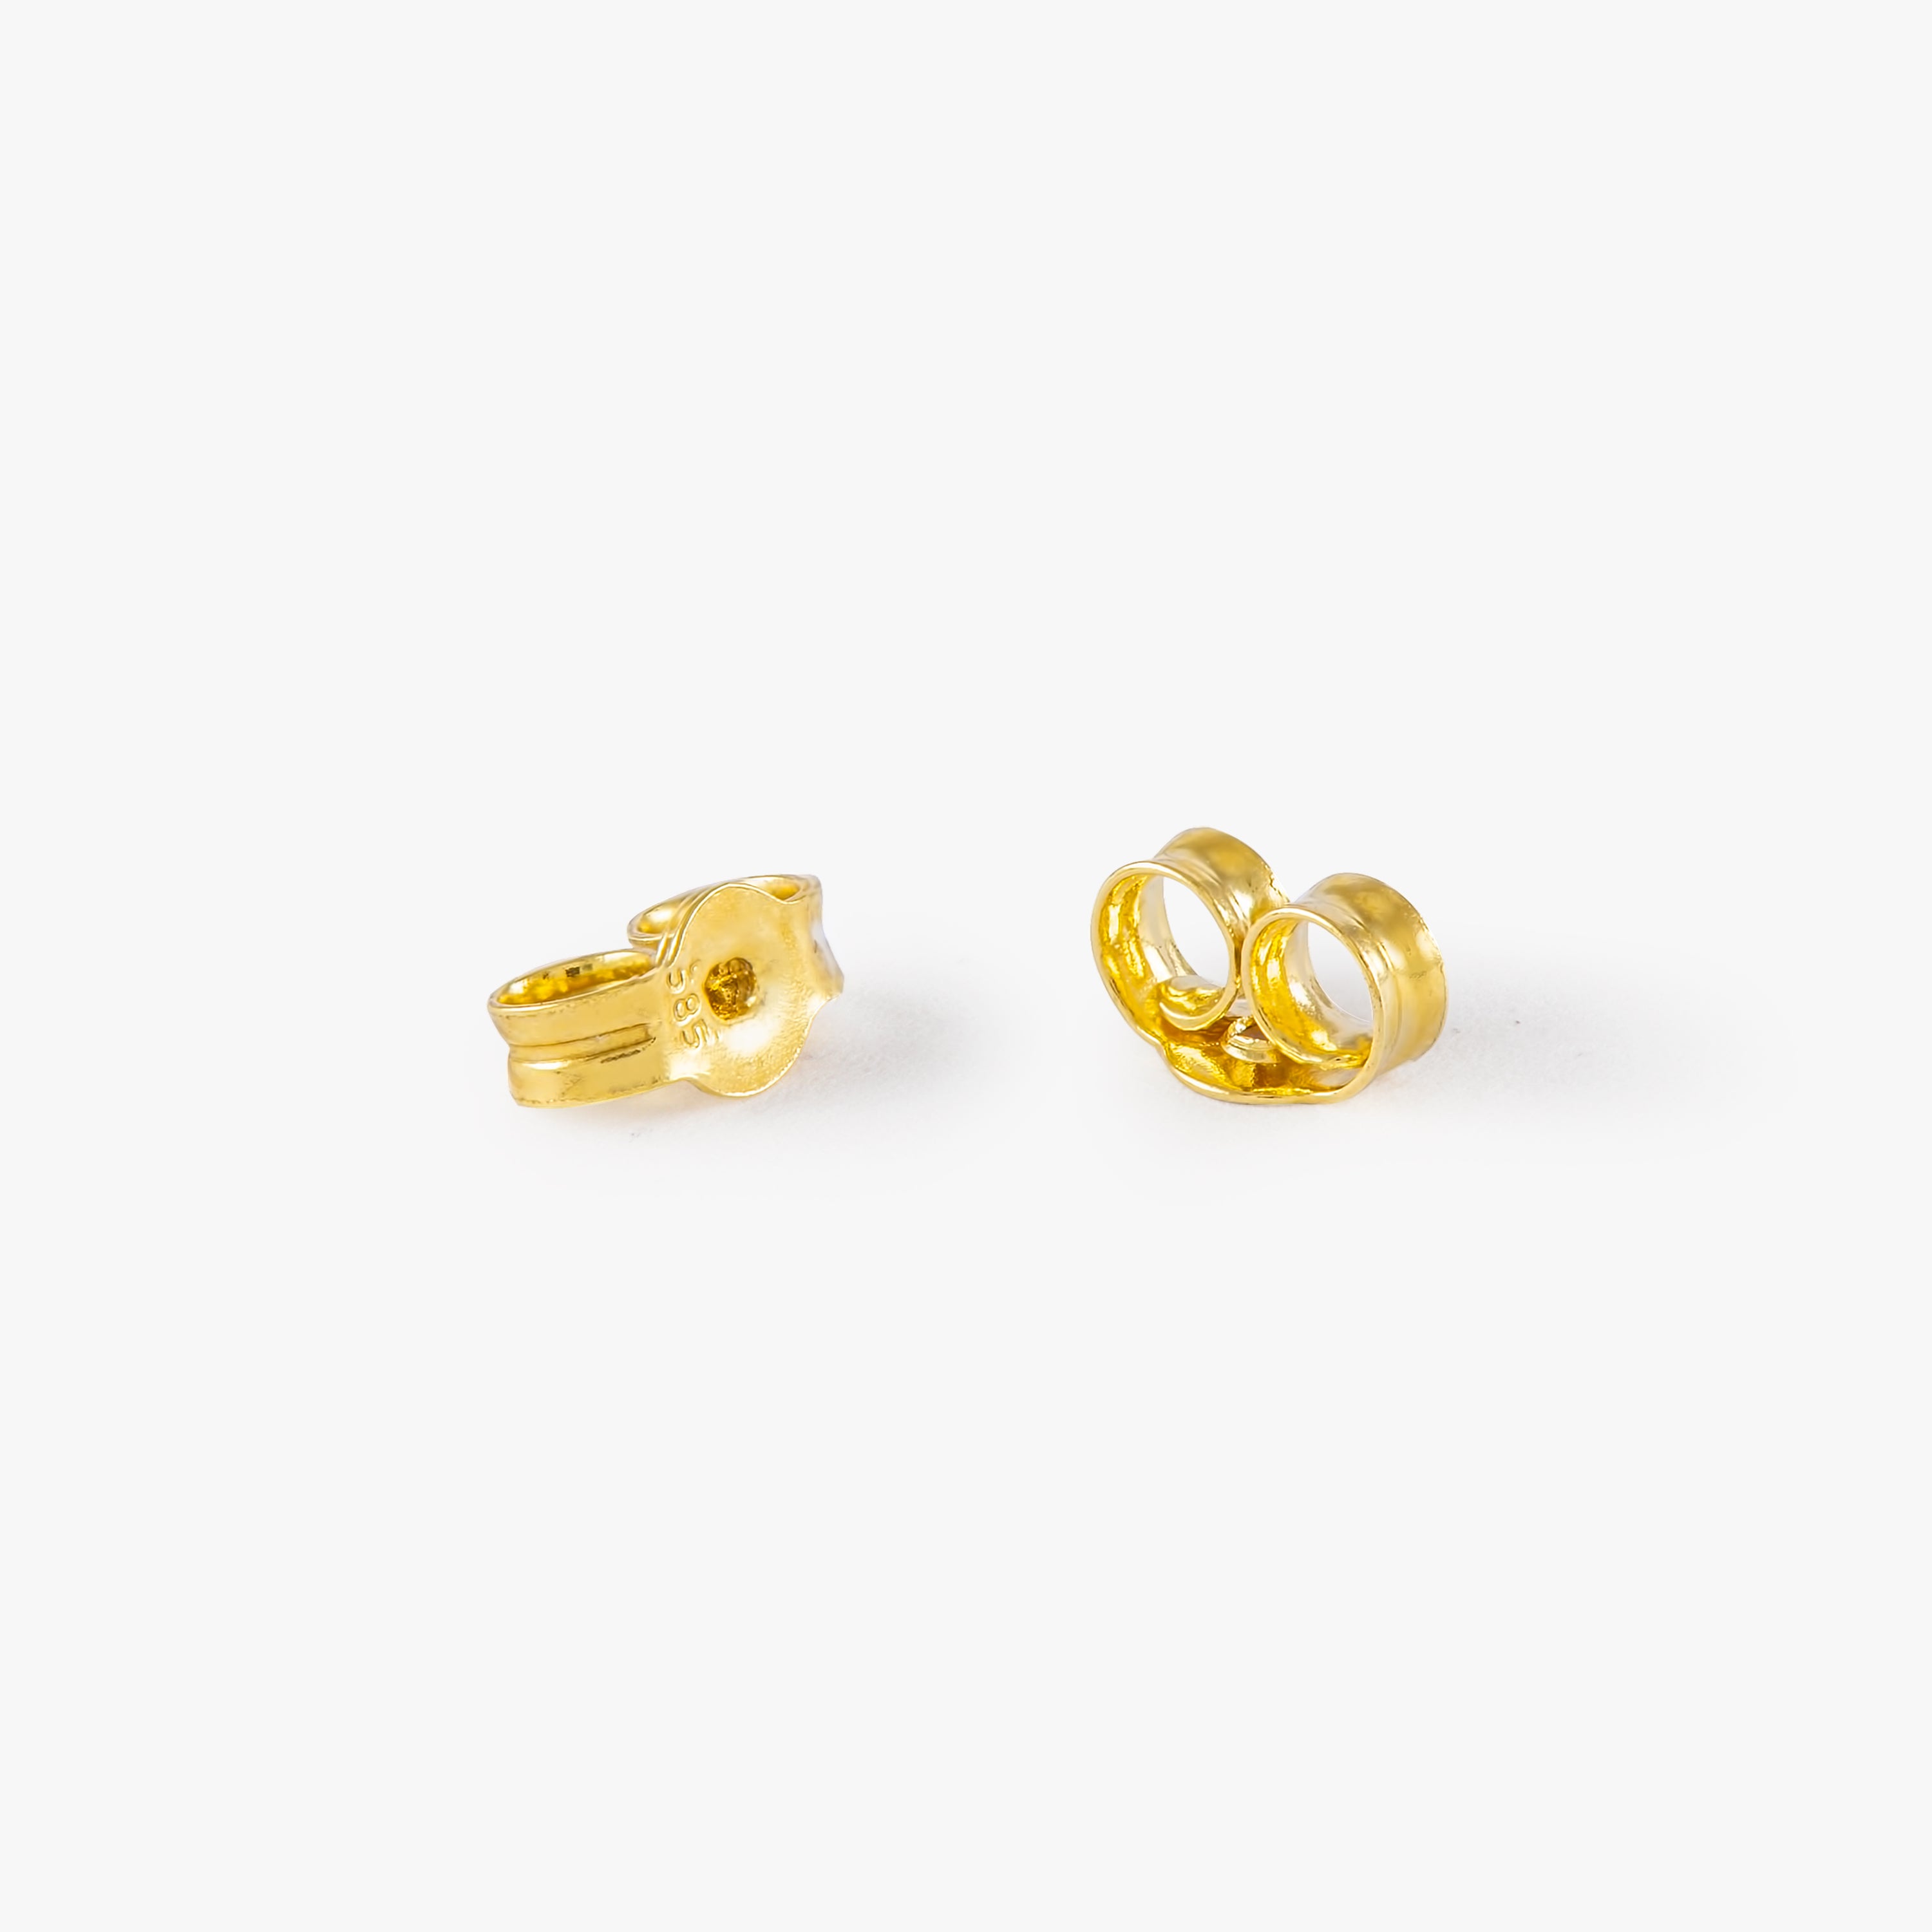 Hamsa Stud Earrings in 14K Gold